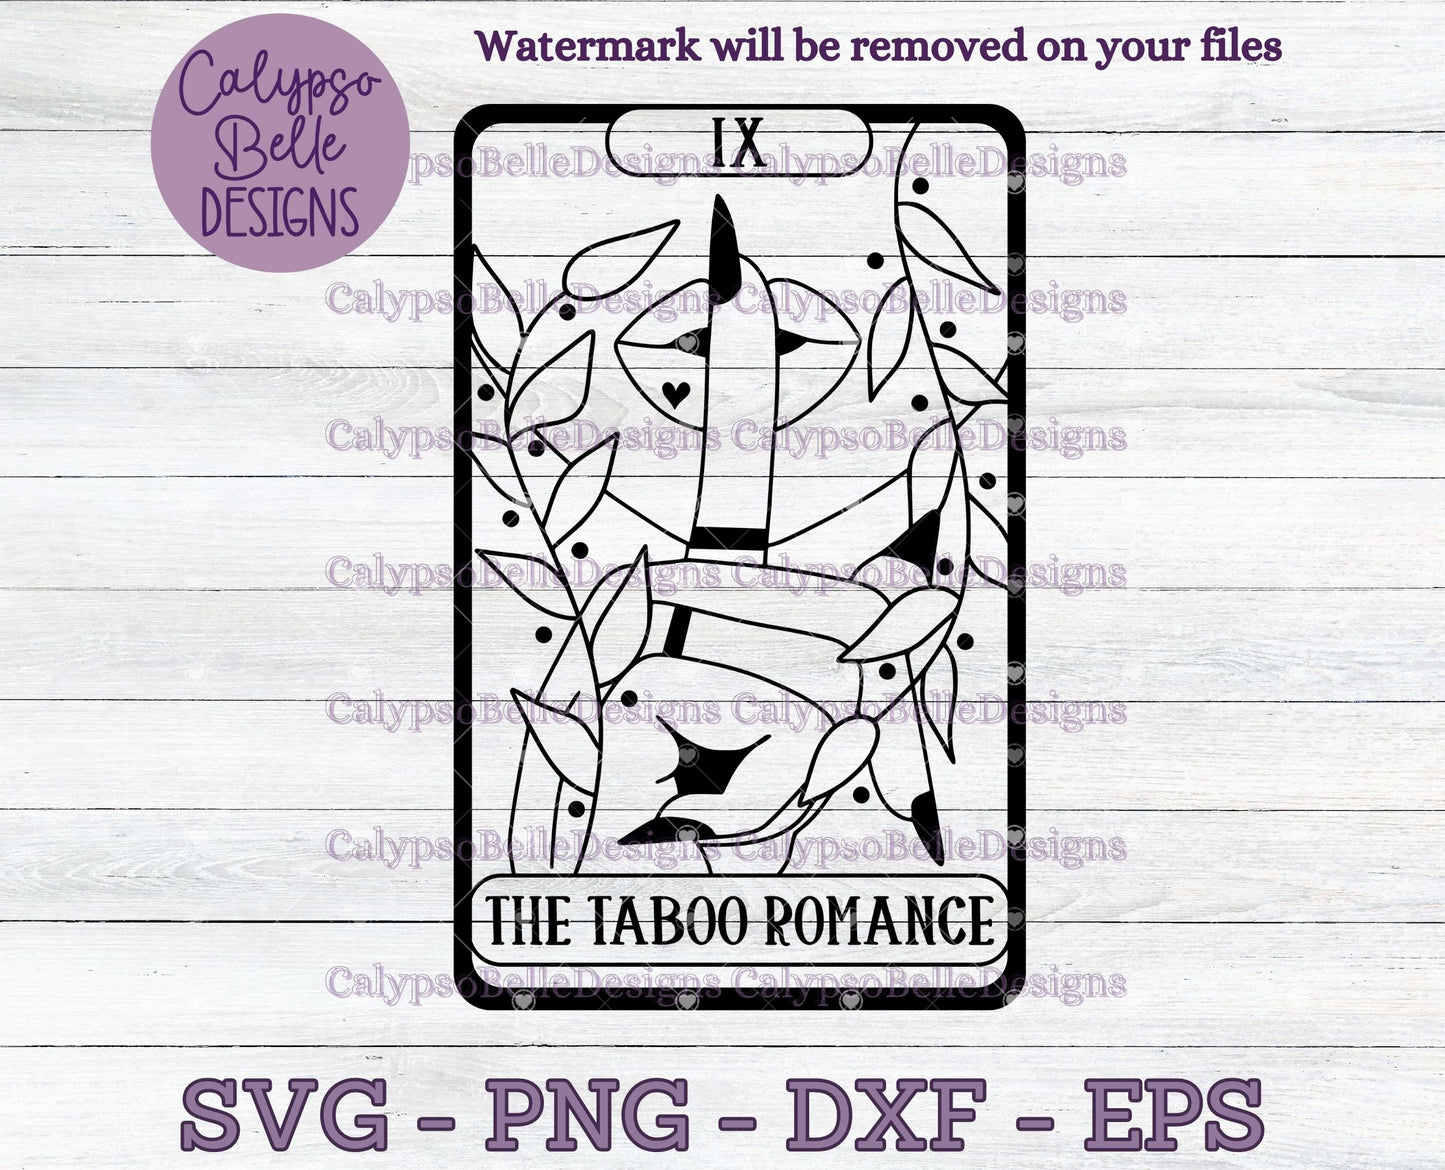 The Taboo Romance Tarot Card Design